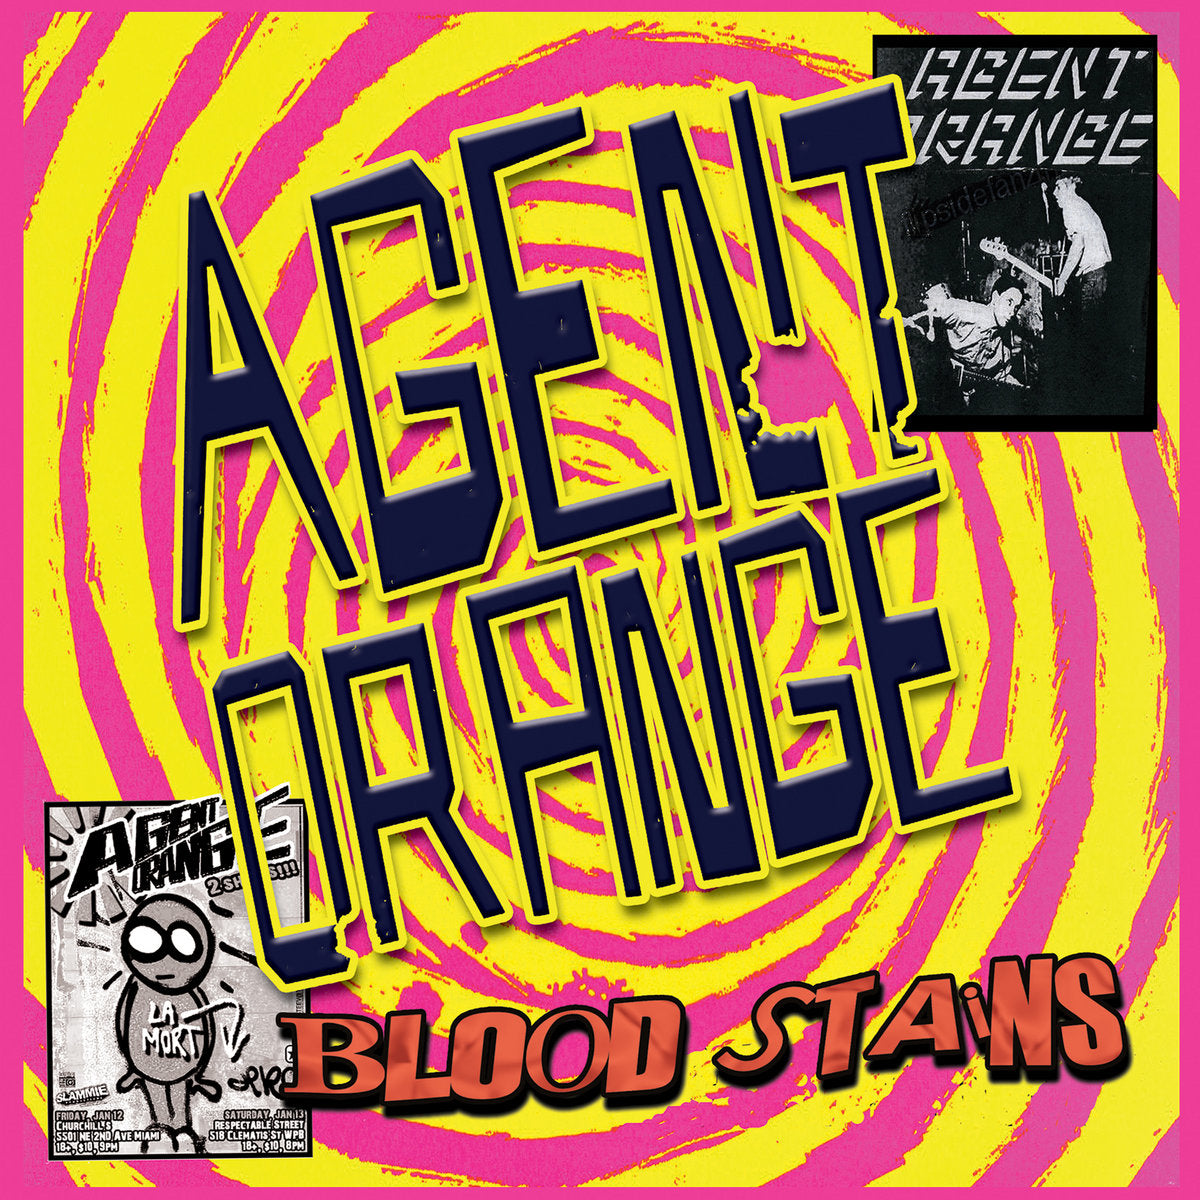 Agent Orange "Bloodstains" 7" (ORANGE Vinyl)